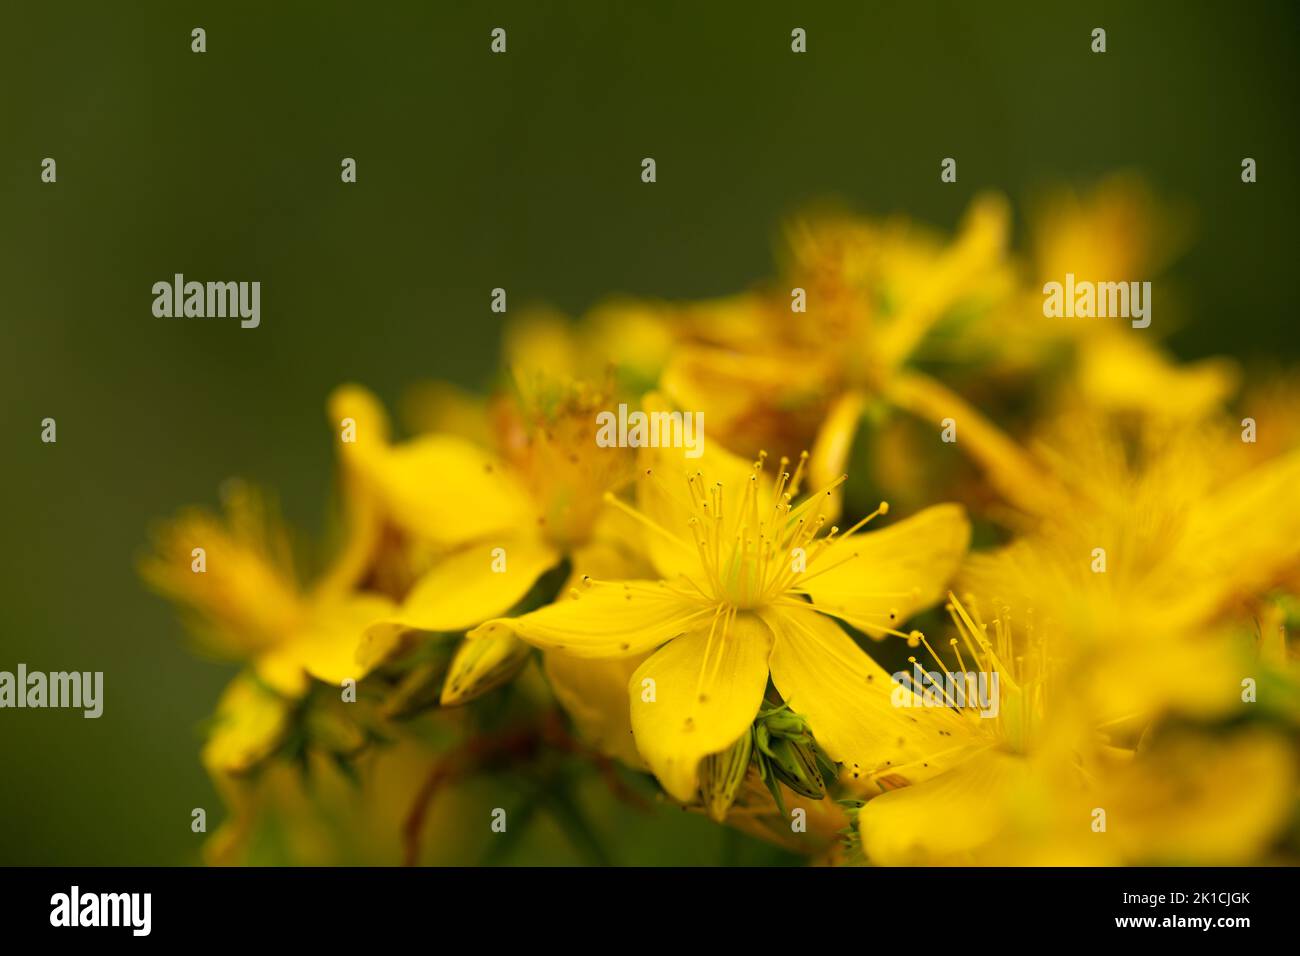 Nahaufnahme eines entzückenden und zarten gelben St. Johns Kraut in mystischem Licht. Das Hypericum perforatum ist eine Heilpflanze. Stockfoto